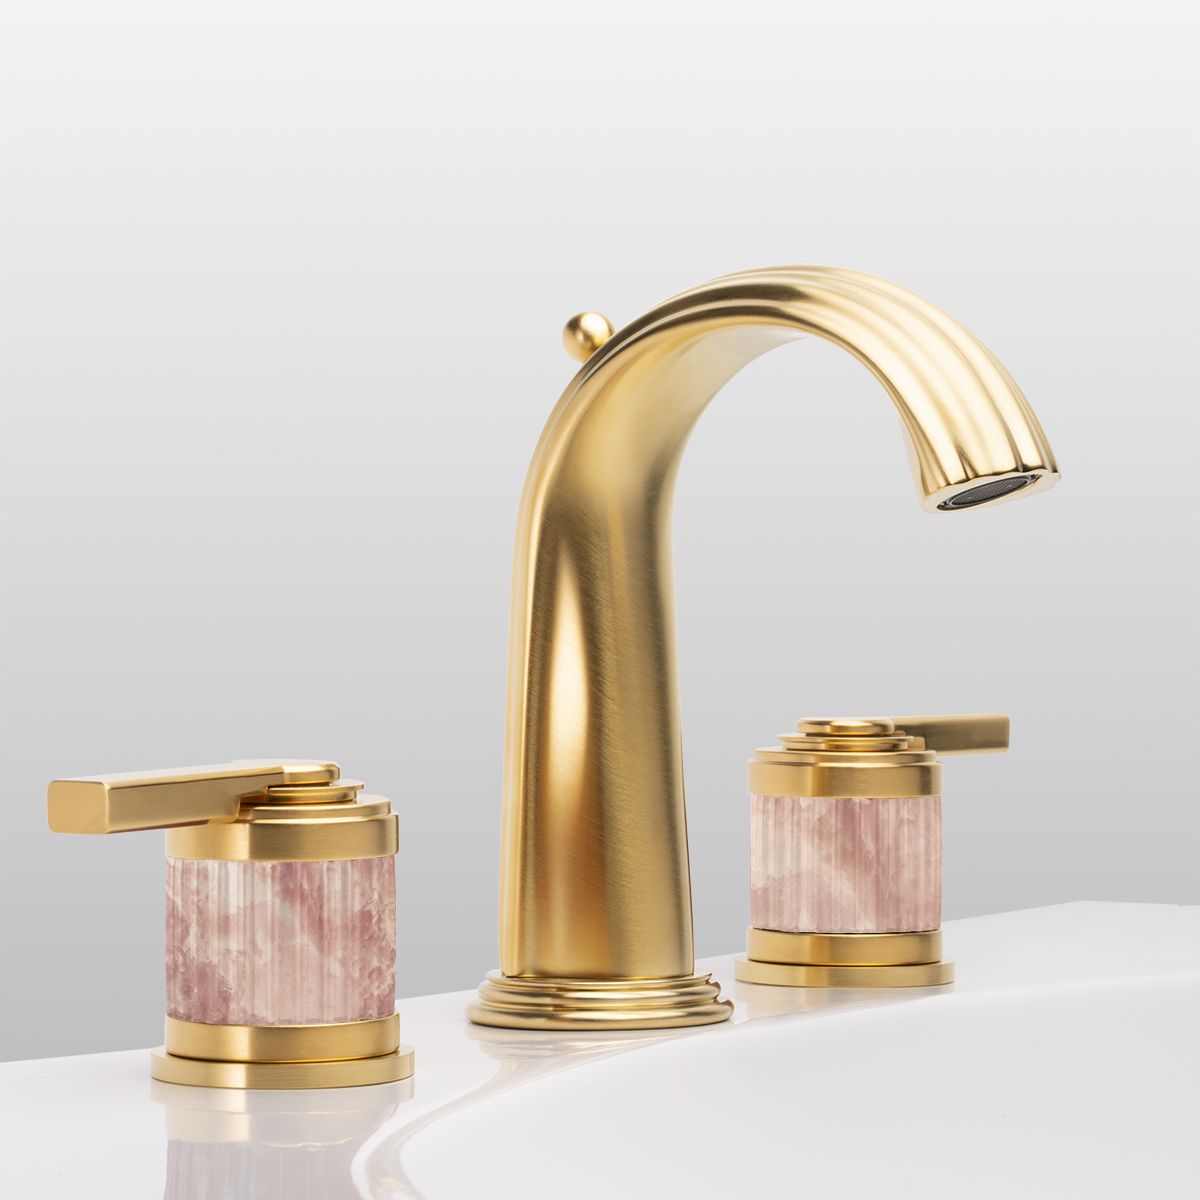  Vòi chậu rửa mặt cổ điển Trianon Prestige Pink Onyx Lever matt soft gold bằng đồng - 1301 